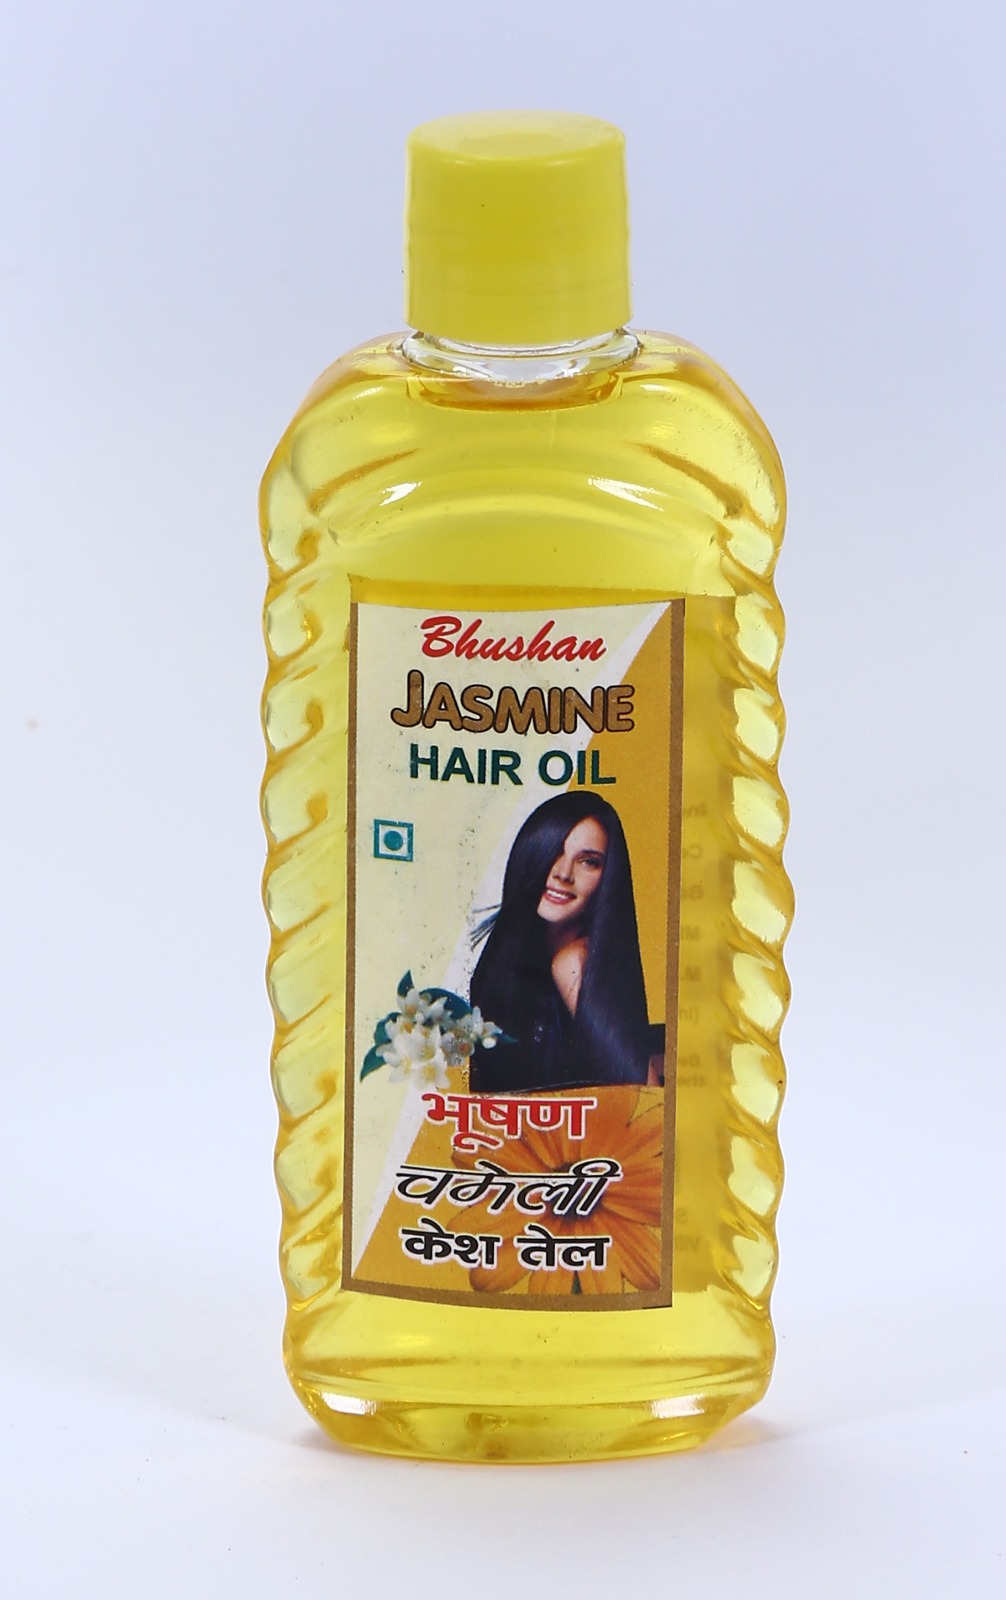 Bhushan Jasmine Hair Oil